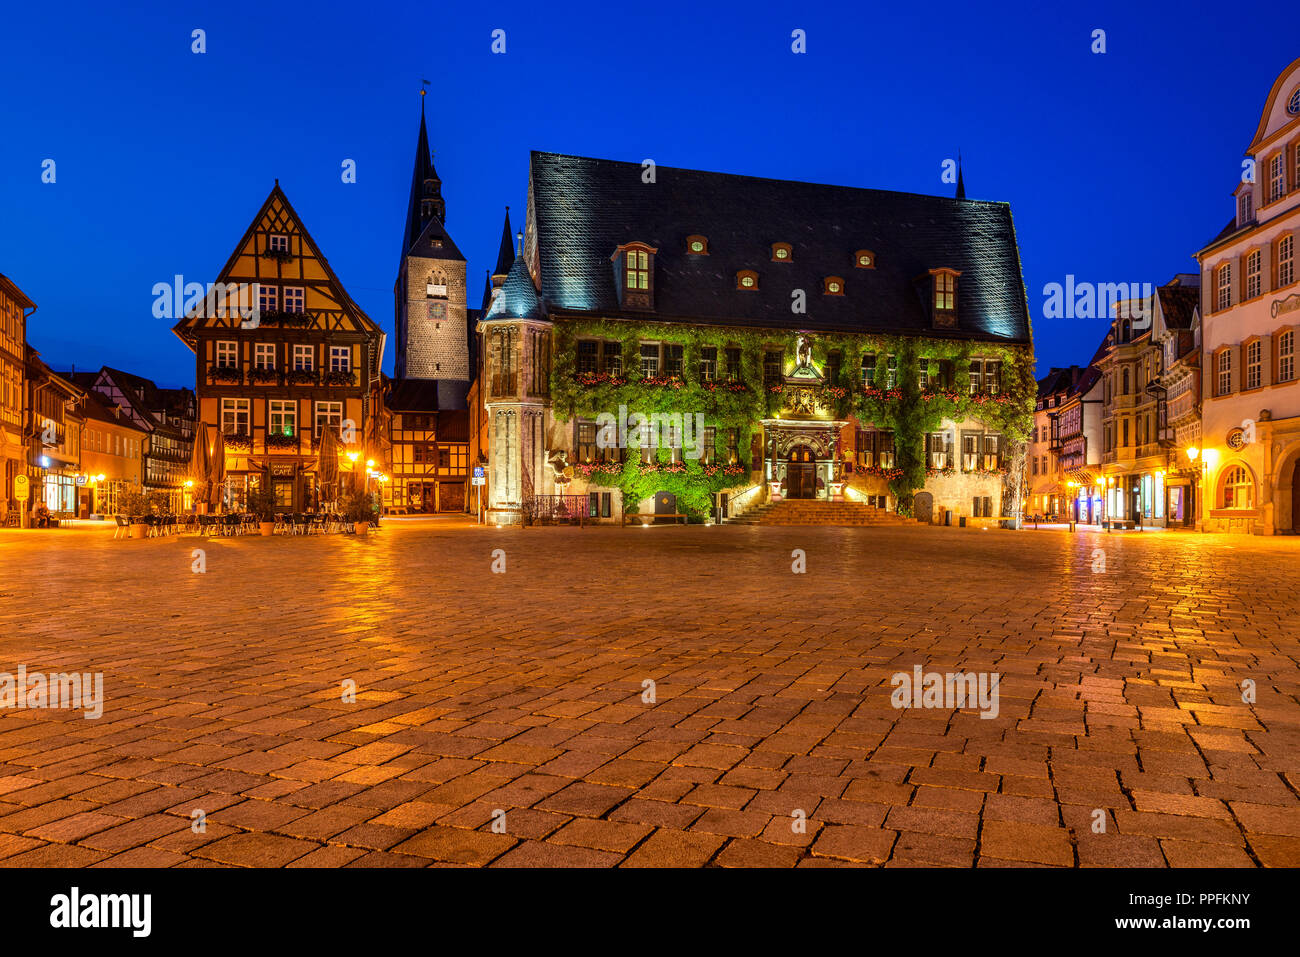 Marché avec l'hôtel de ville et église du marché, photo de nuit, l'UNESCO World Heritage Site, Quedlinburg, Saxe-Anhalt, Allemagne, Harz Banque D'Images